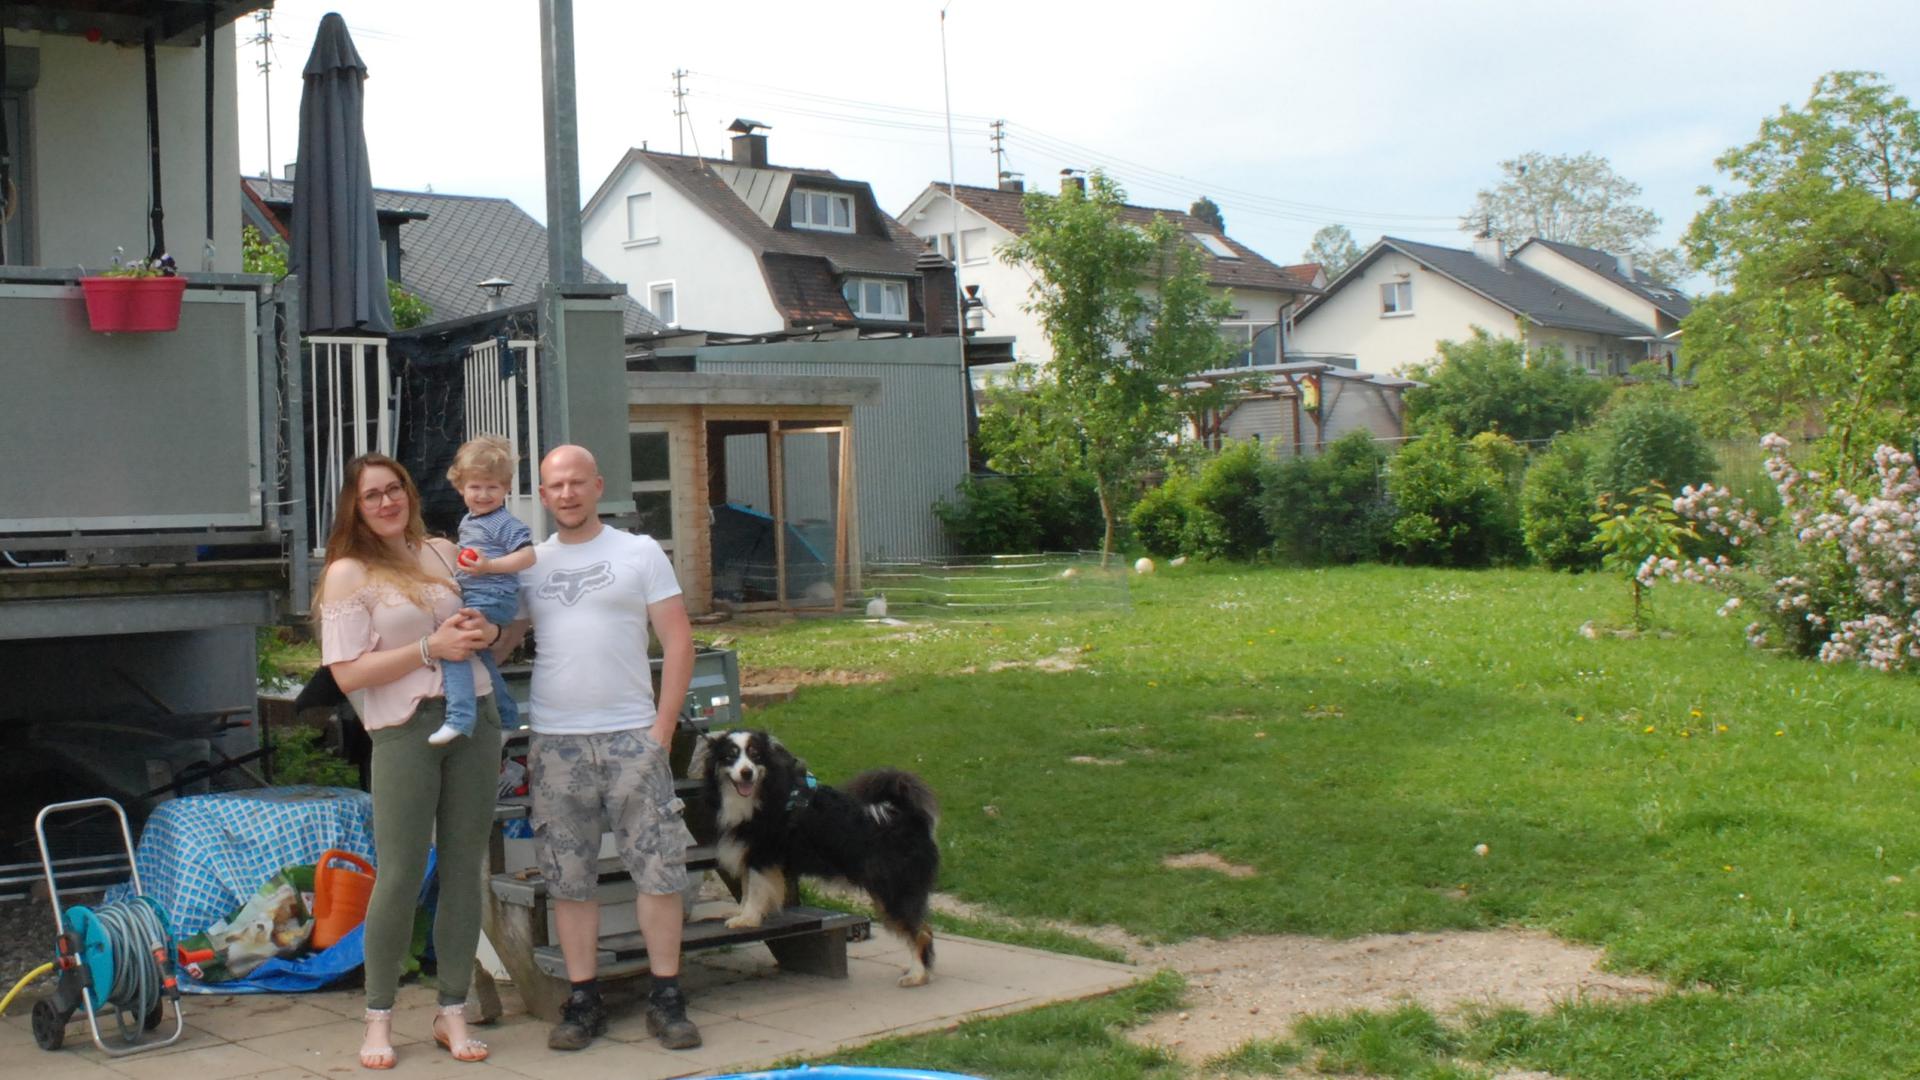 Ariane und Christian Klanke mit ihrem Sohn vor ihrem Haus in Baden-Baden-Balg.